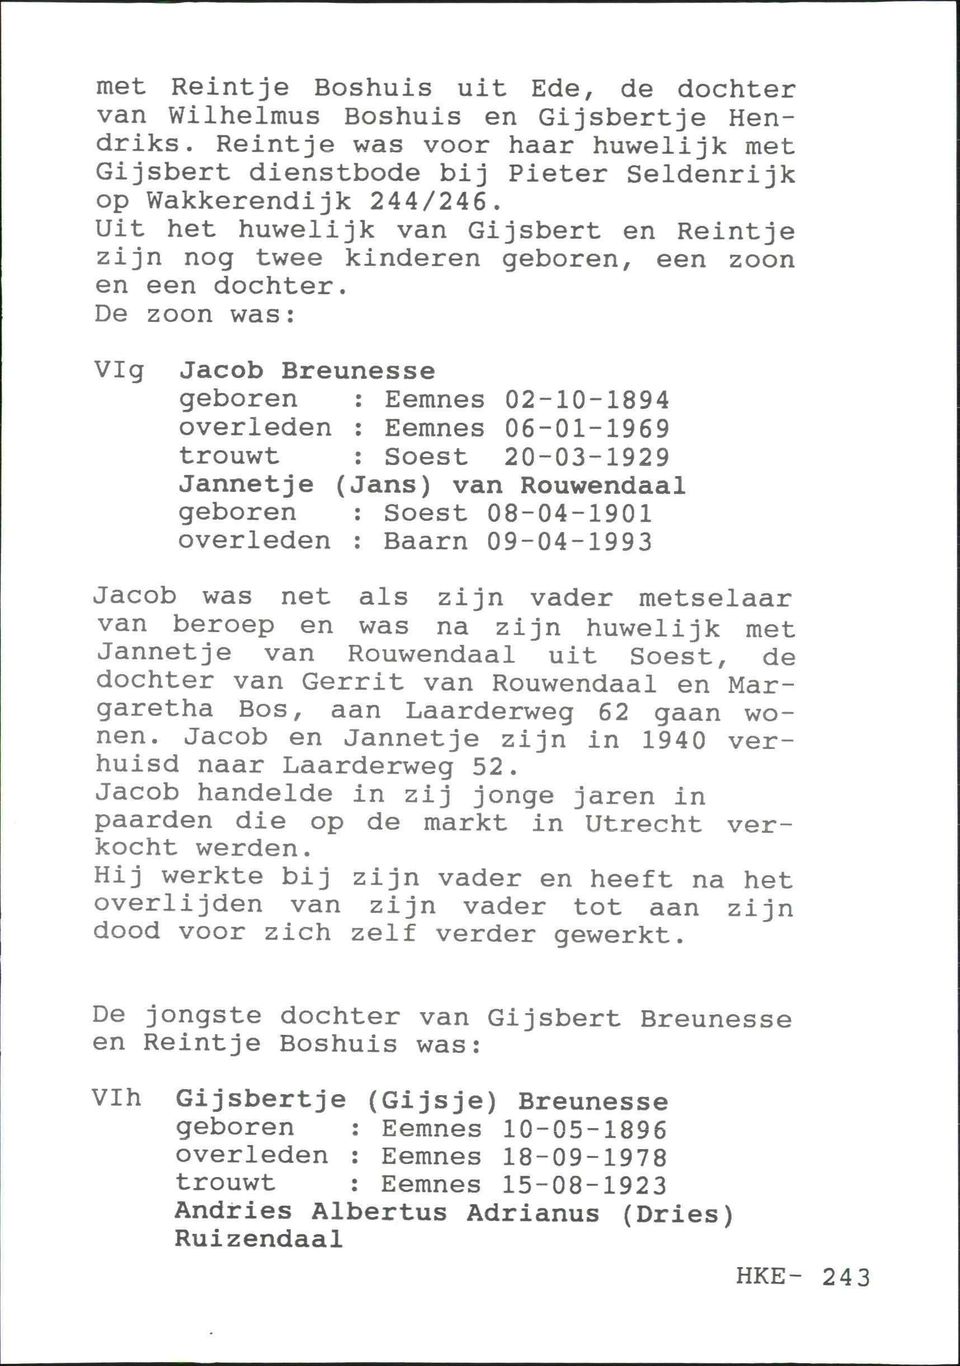 De zoon was : VIg Jacob Breunesse geboren : Eemnes 02-10-1894 overleden : Eemnes 06-01-1969 trouwt : Soest 20-03-1929 Jannetje (Jans) van Rouwendaal geboren : Soest 08-04-1901 overleden : Baarn